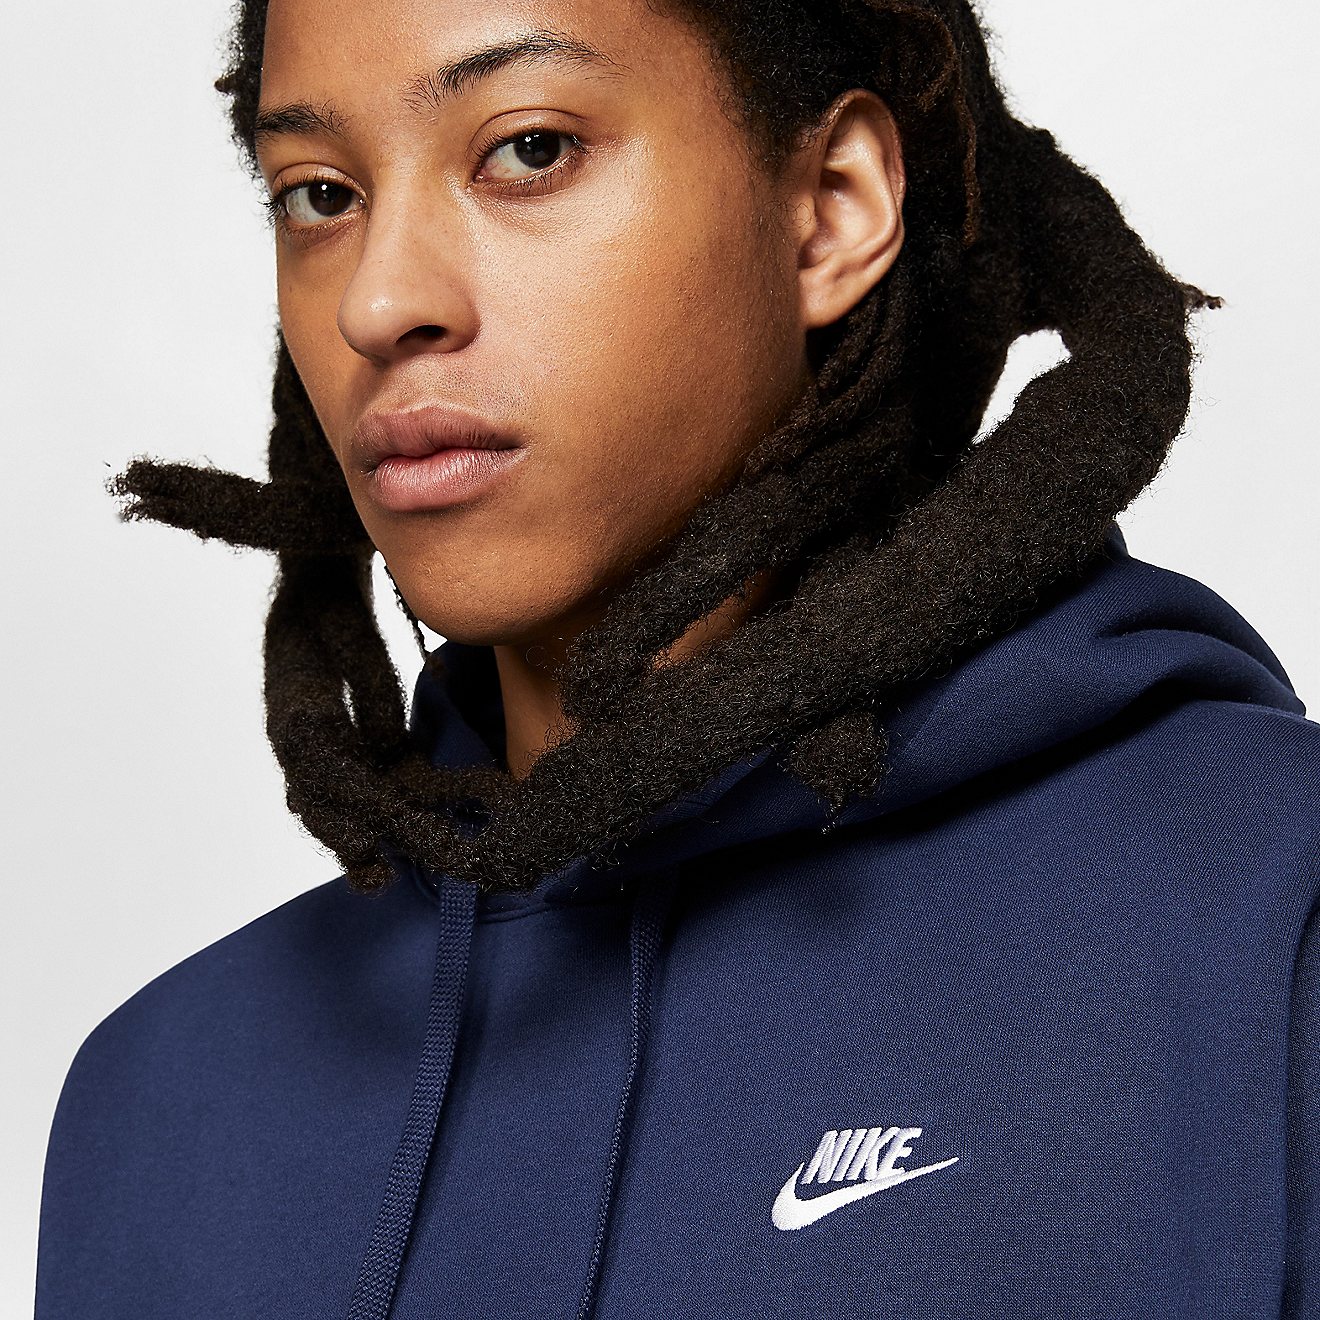 Nike Men's Sportswear Club Fleece Pullover Hoodie | Academy